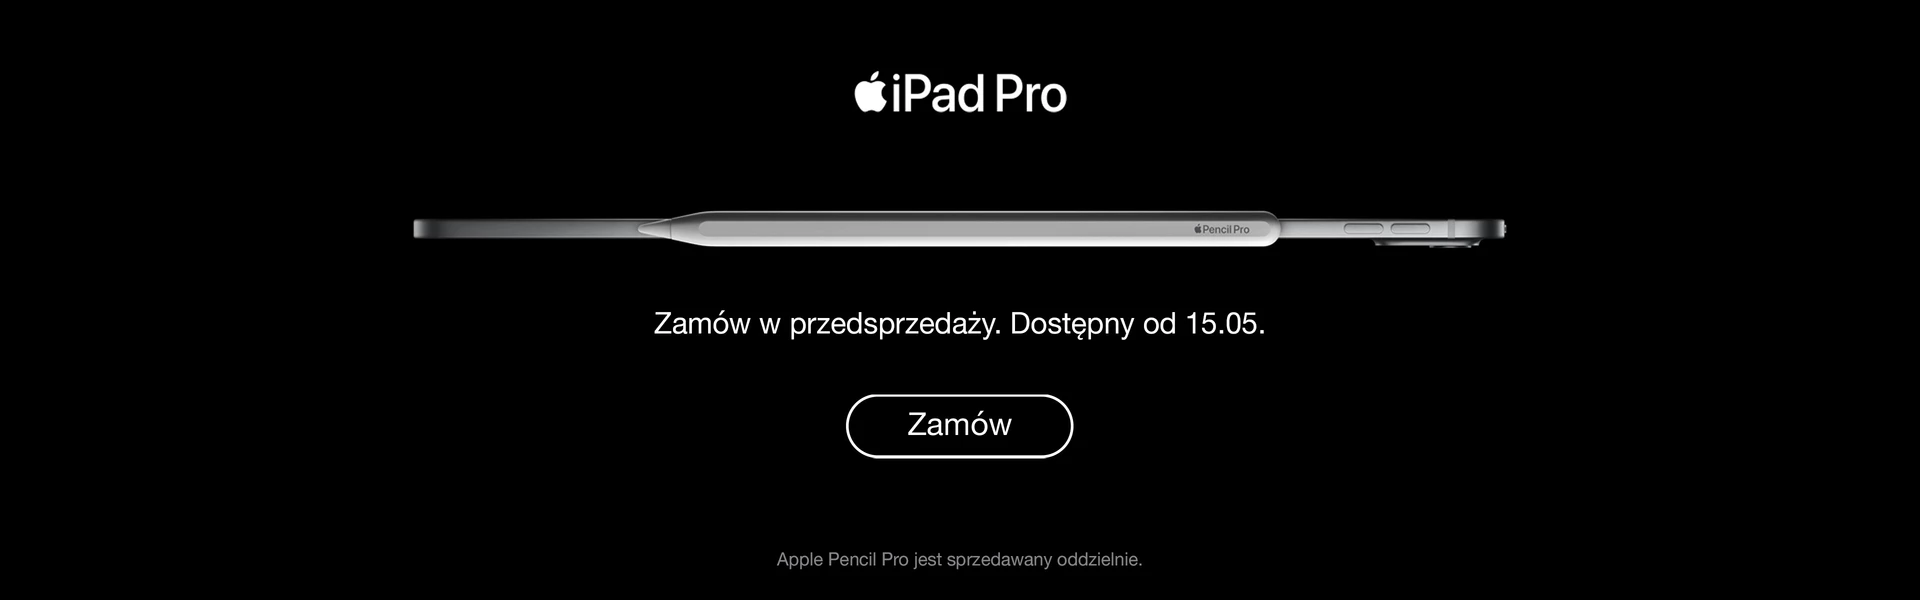 [Apple] NPI iPad Pro wkrotce | rotator